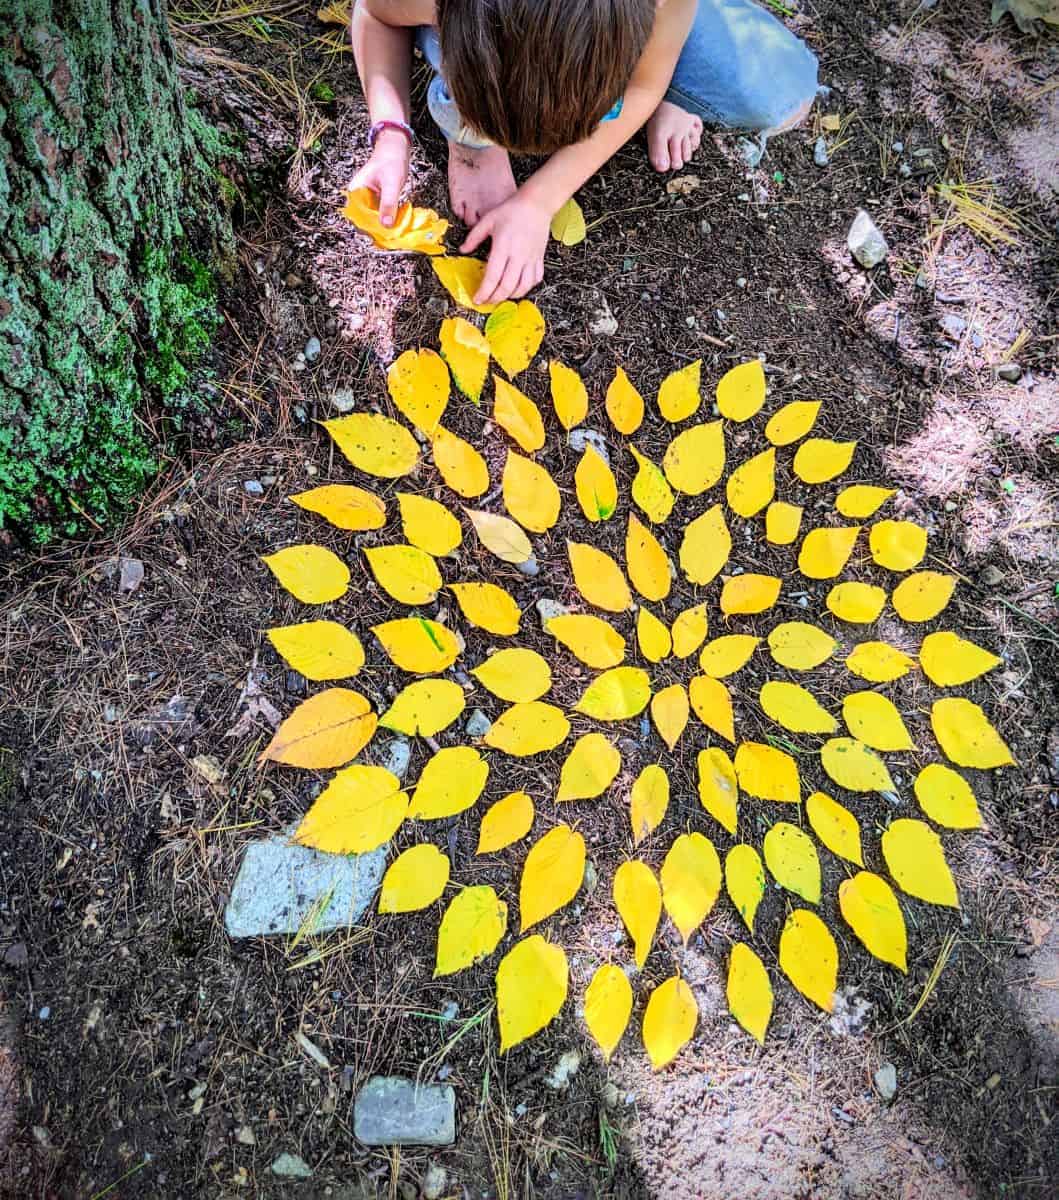 Leaf manadala nature art with kids